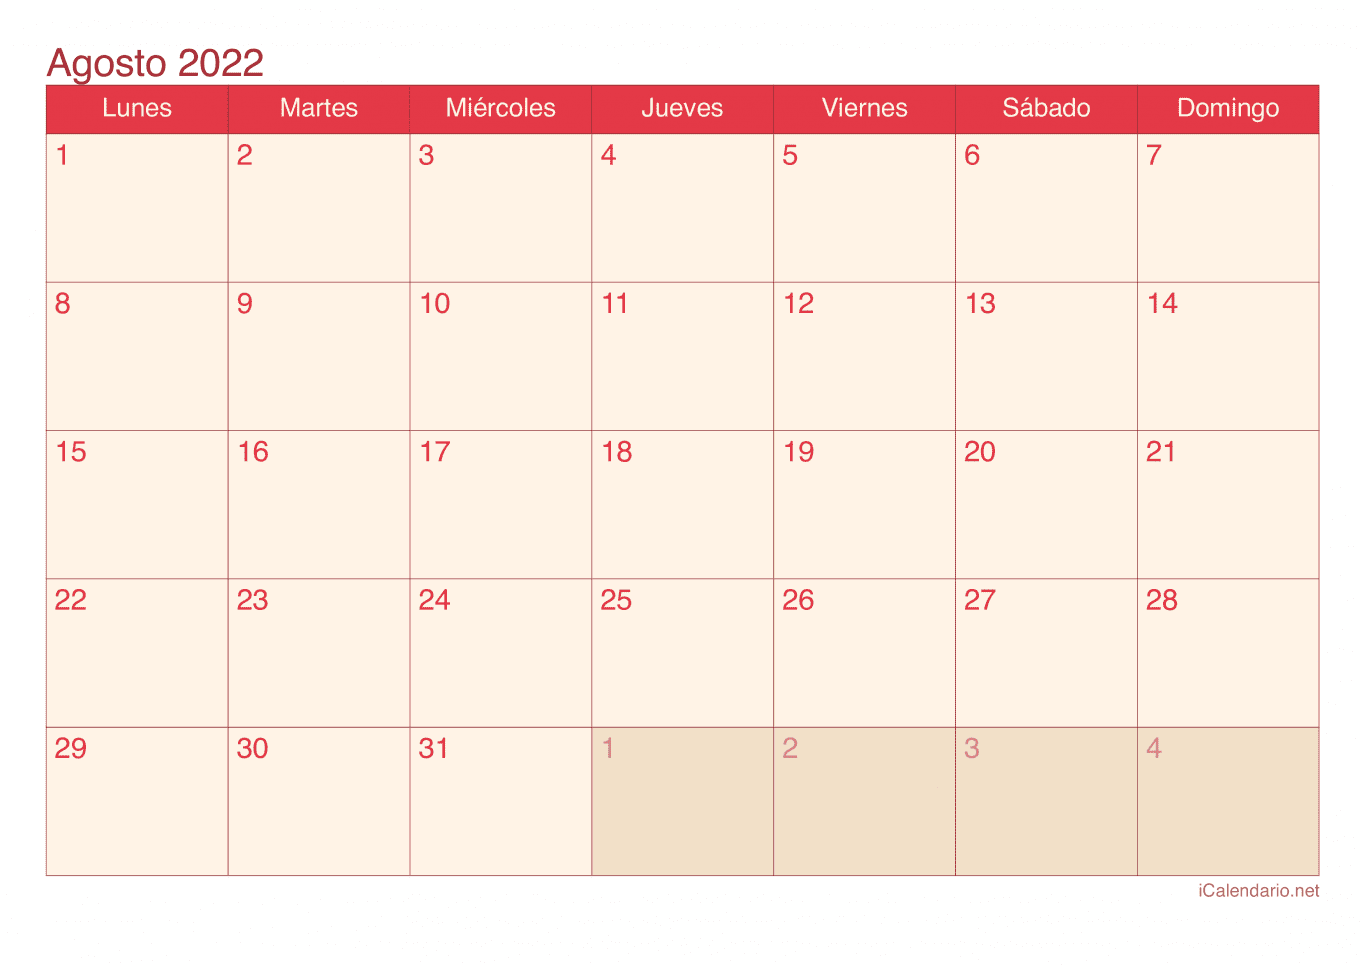 Calendario de agosto 2022 - Cherry